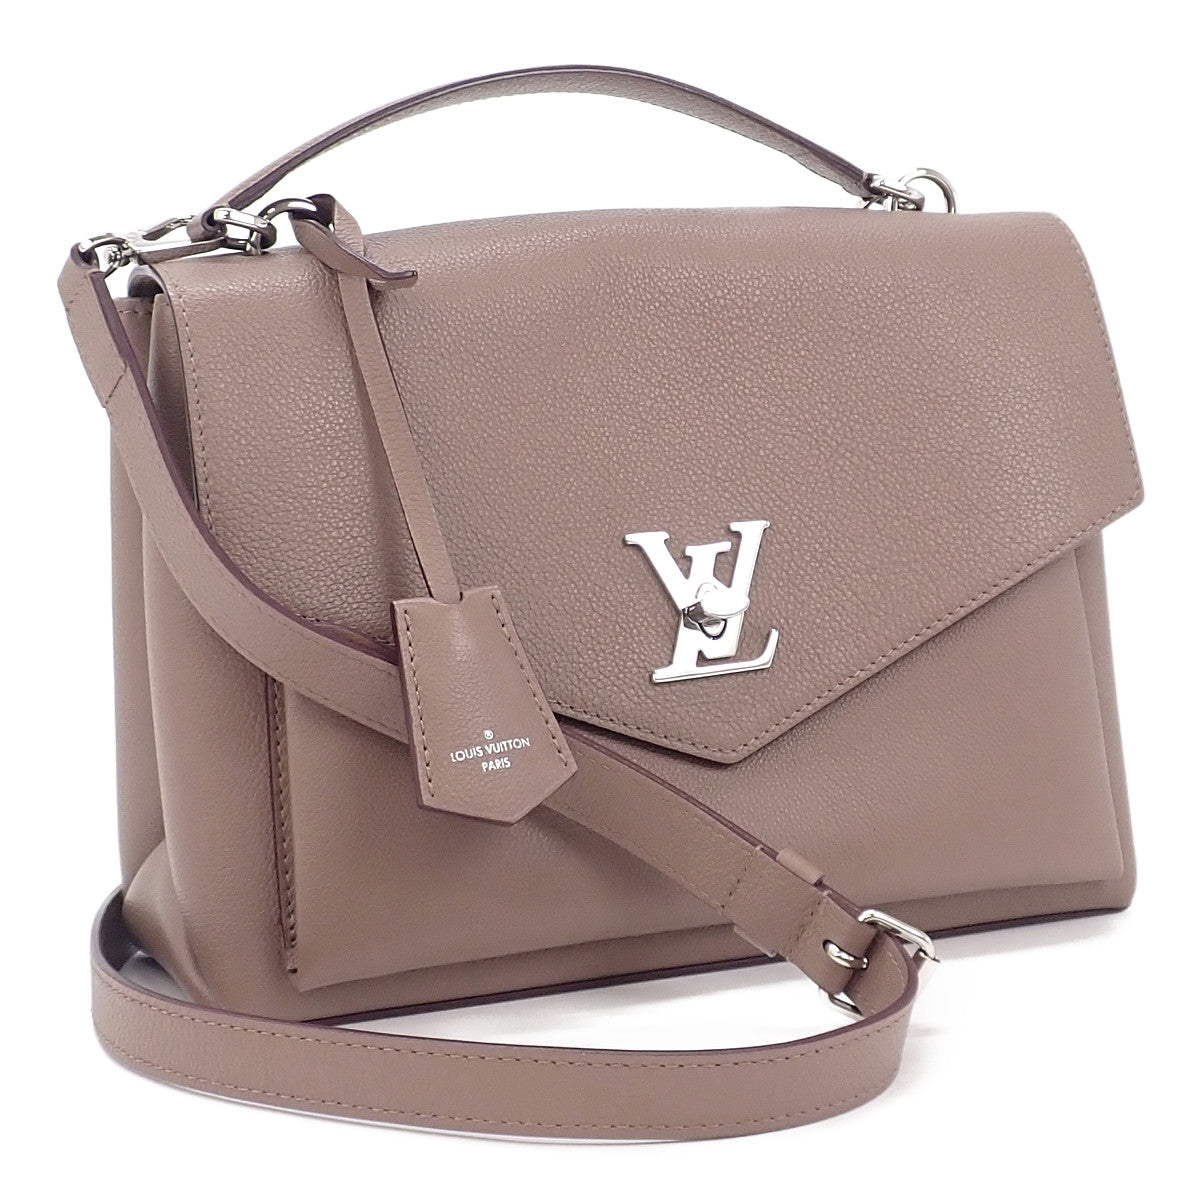 Louis Vuitton My Lock Me Satchel Leather Shoulder Bag M54877 in Excellent condition